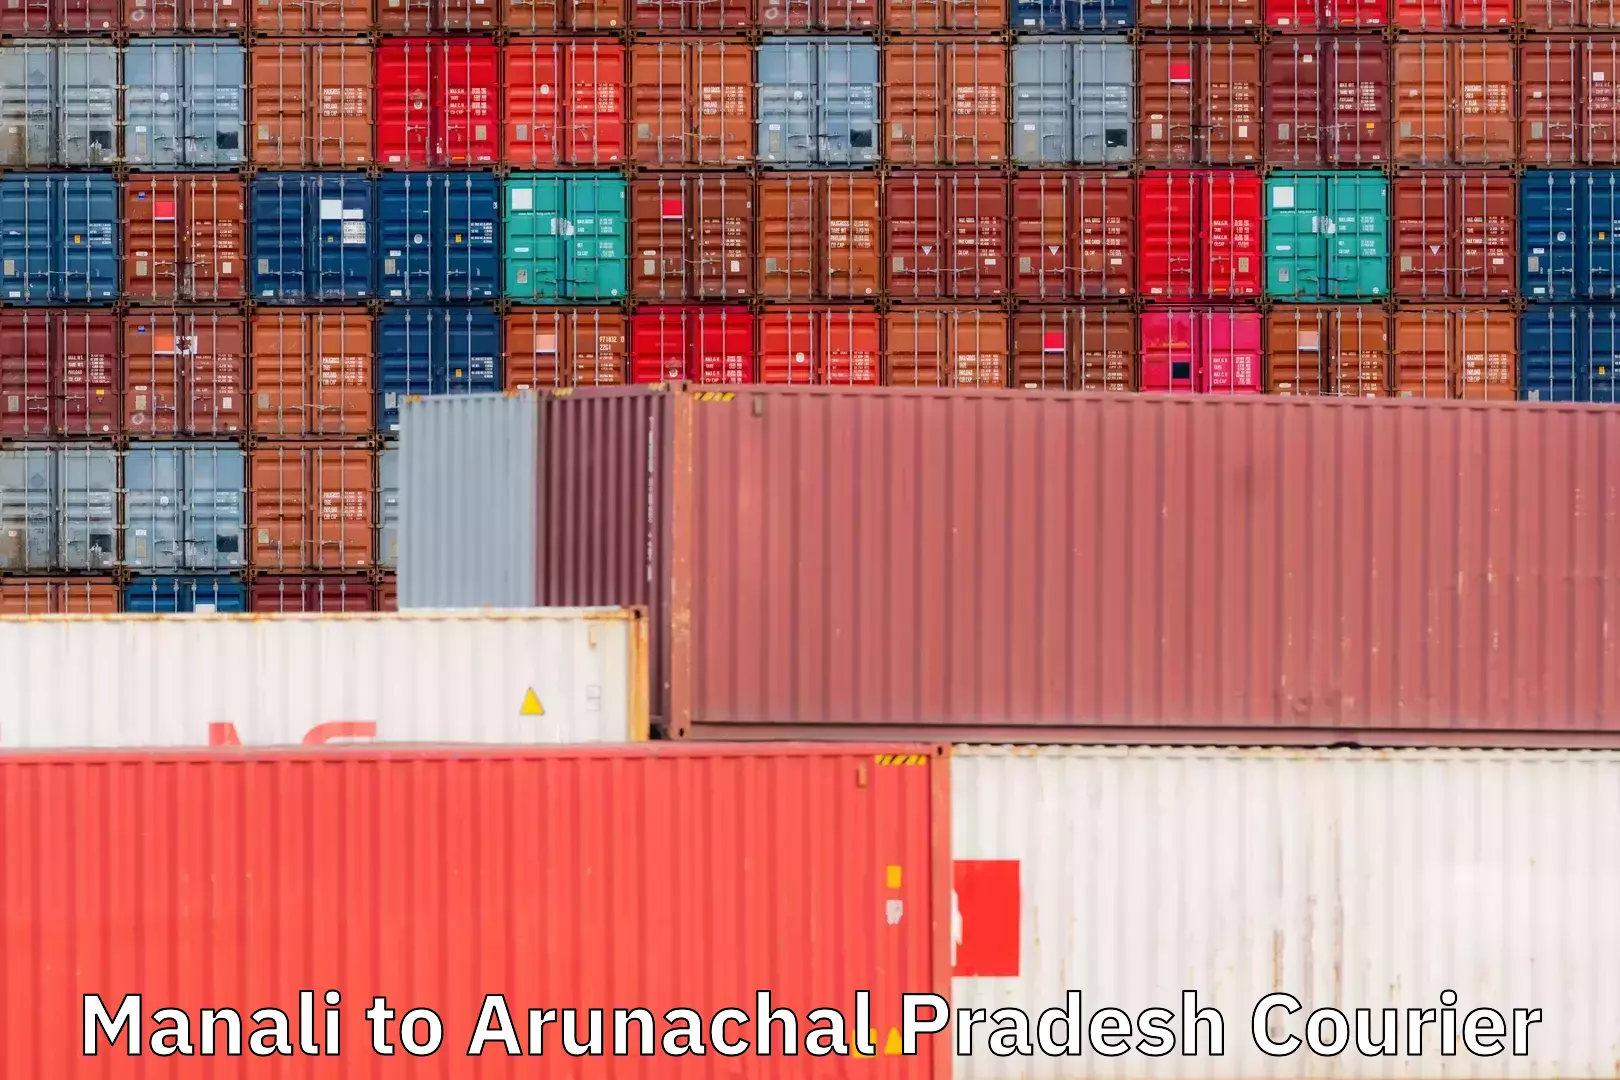 Tailored shipping plans Manali to Arunachal Pradesh